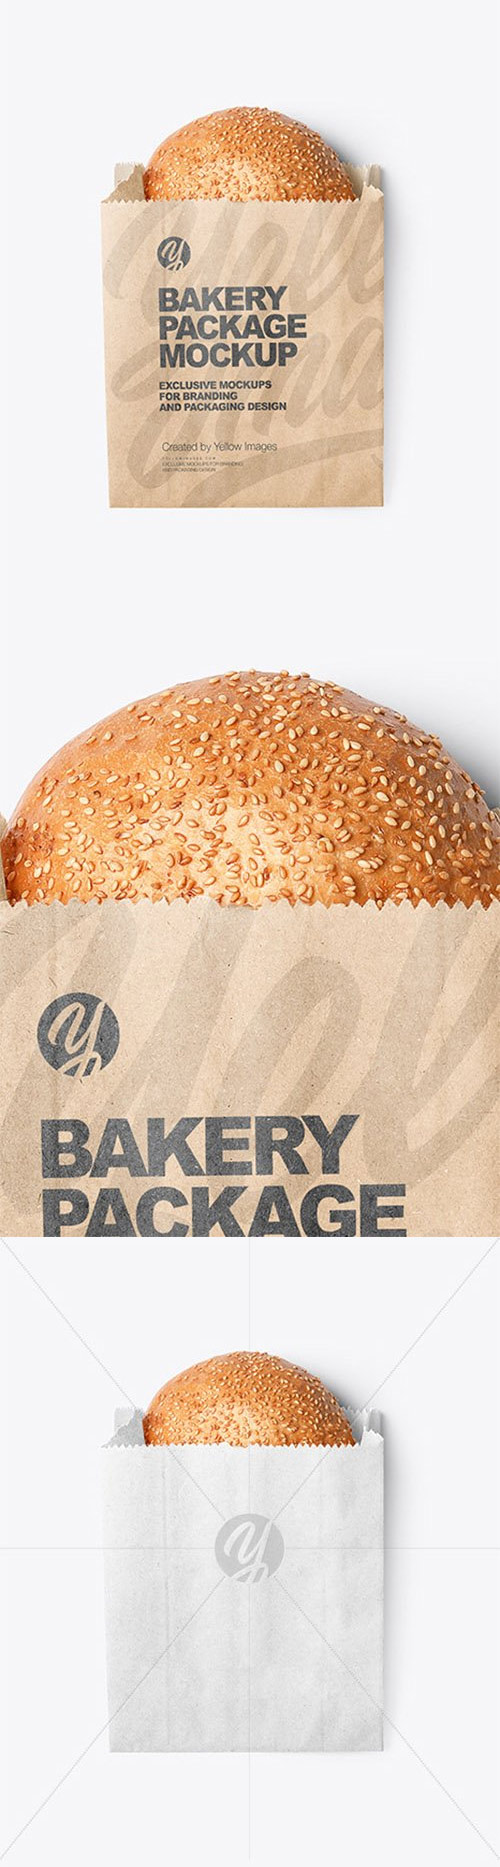 Kraft Paper Bag With Burger Bun Mockup Mockups Free Psd Templates